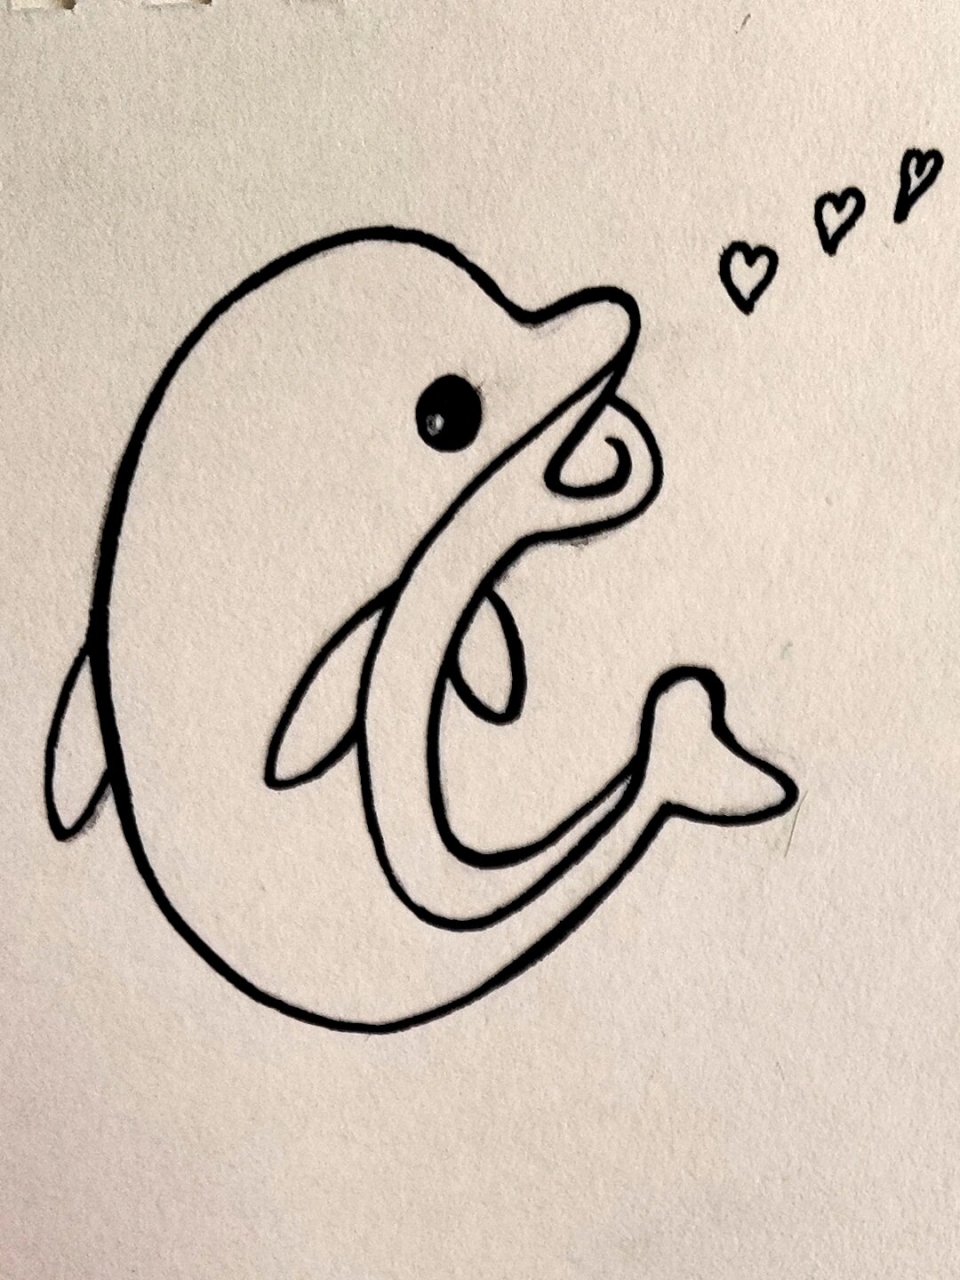 可爱的小海豚简笔画图片